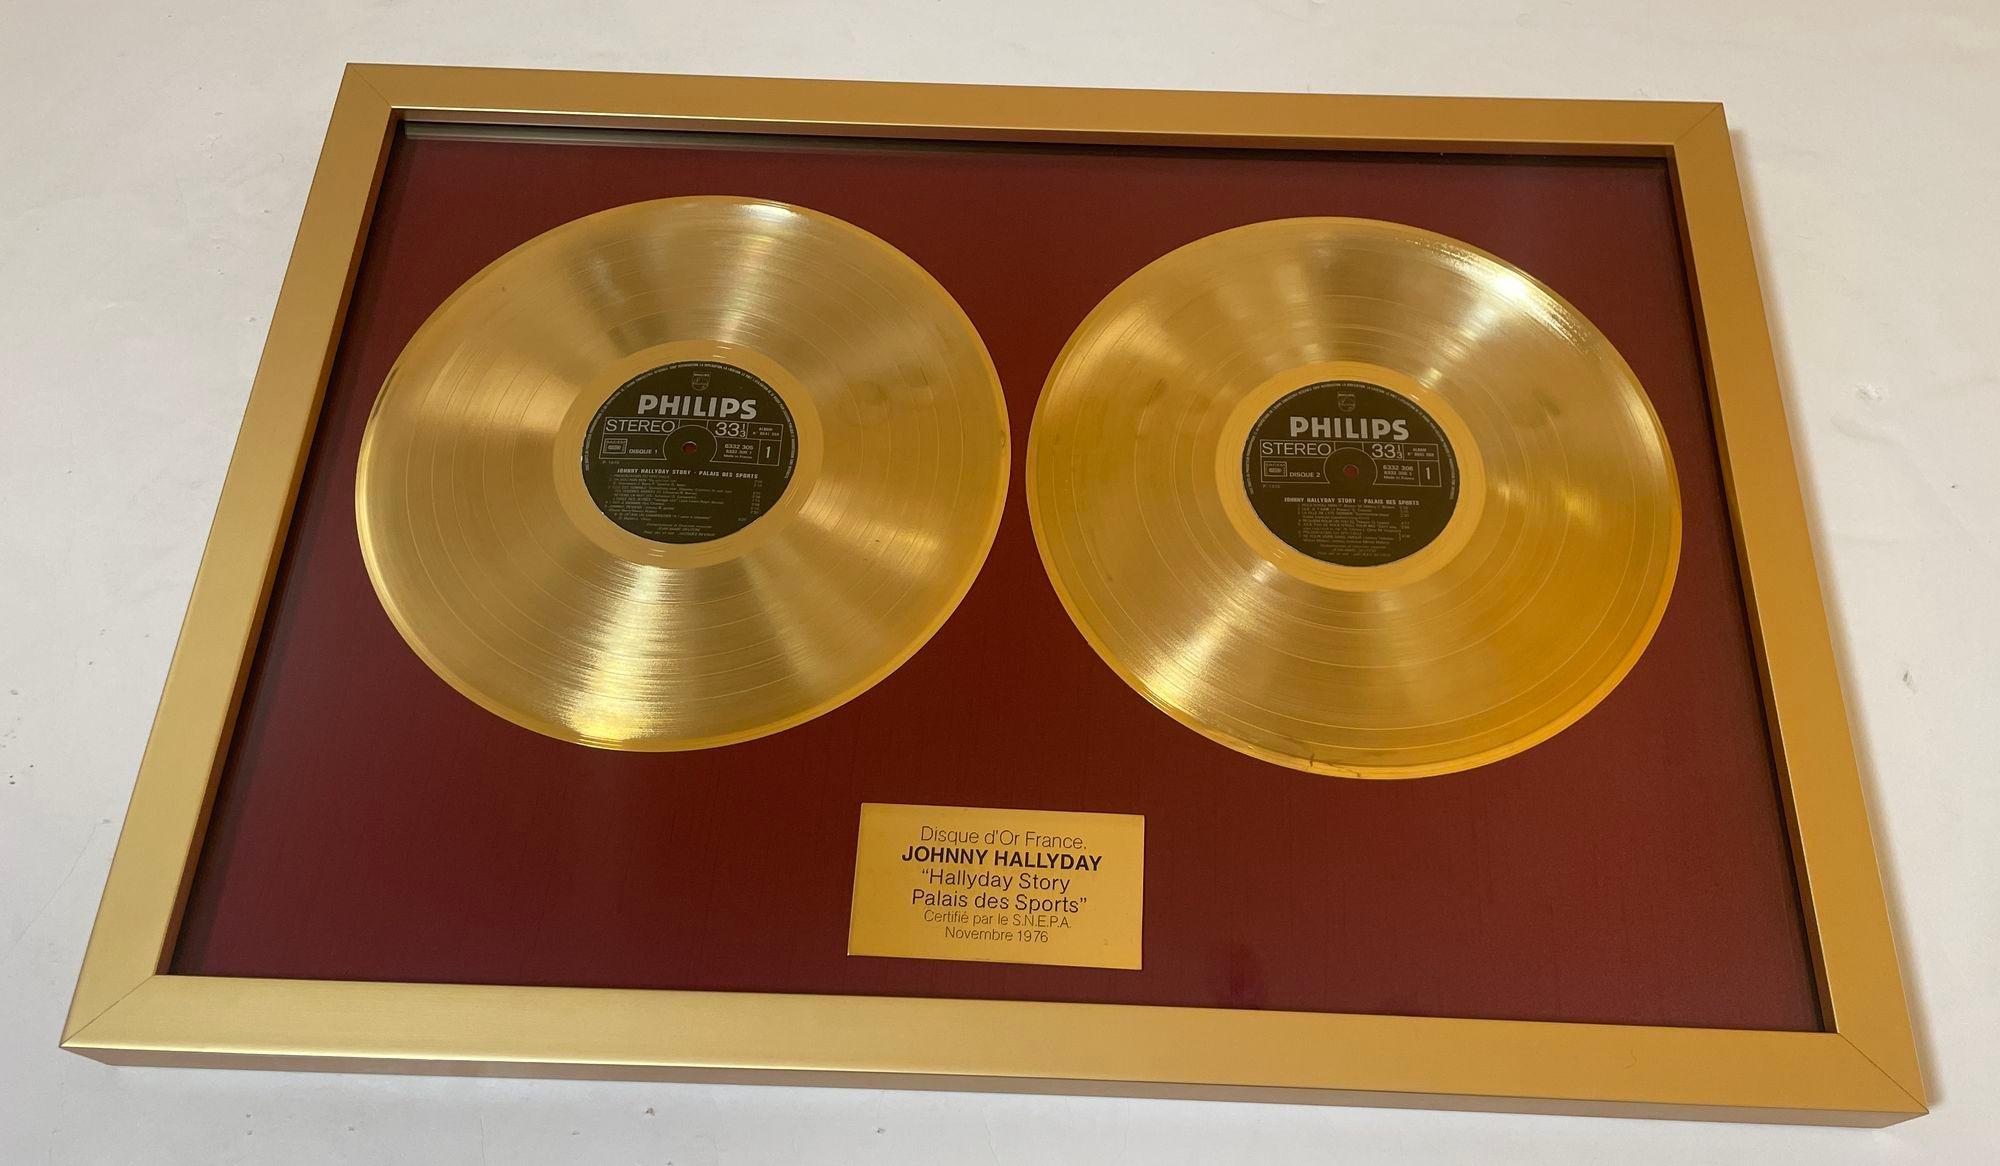 Prix officiel du record d'or France Johnny Halliday Story Palais des Sports 1976.
Prix du disque d'or - Disque d'or officiel France Johnny Hallyday 